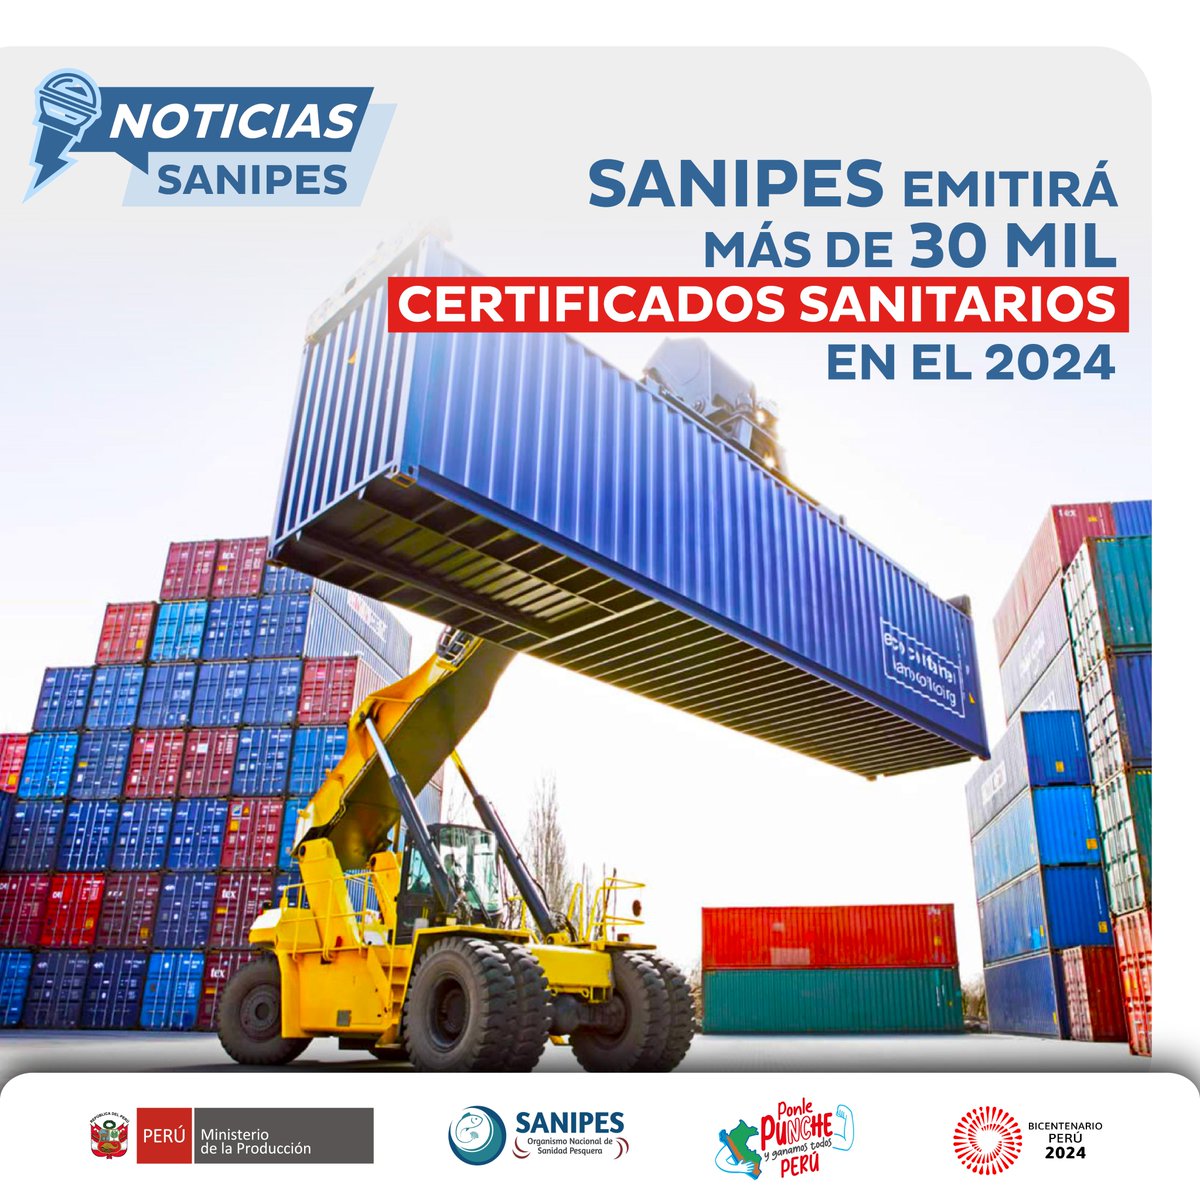 📌 #NotaDePrensa | Este 2024, #Sanipes proyecta emitir más de 30 mil certificados sanitarios para productos pesqueros y acuícolas, a fin de garantizar la inocuidad de productos hidrobiológicos que se comercializan a nivel nacional e internacional. ✅ 

🌐 goo.su/DHVAKy